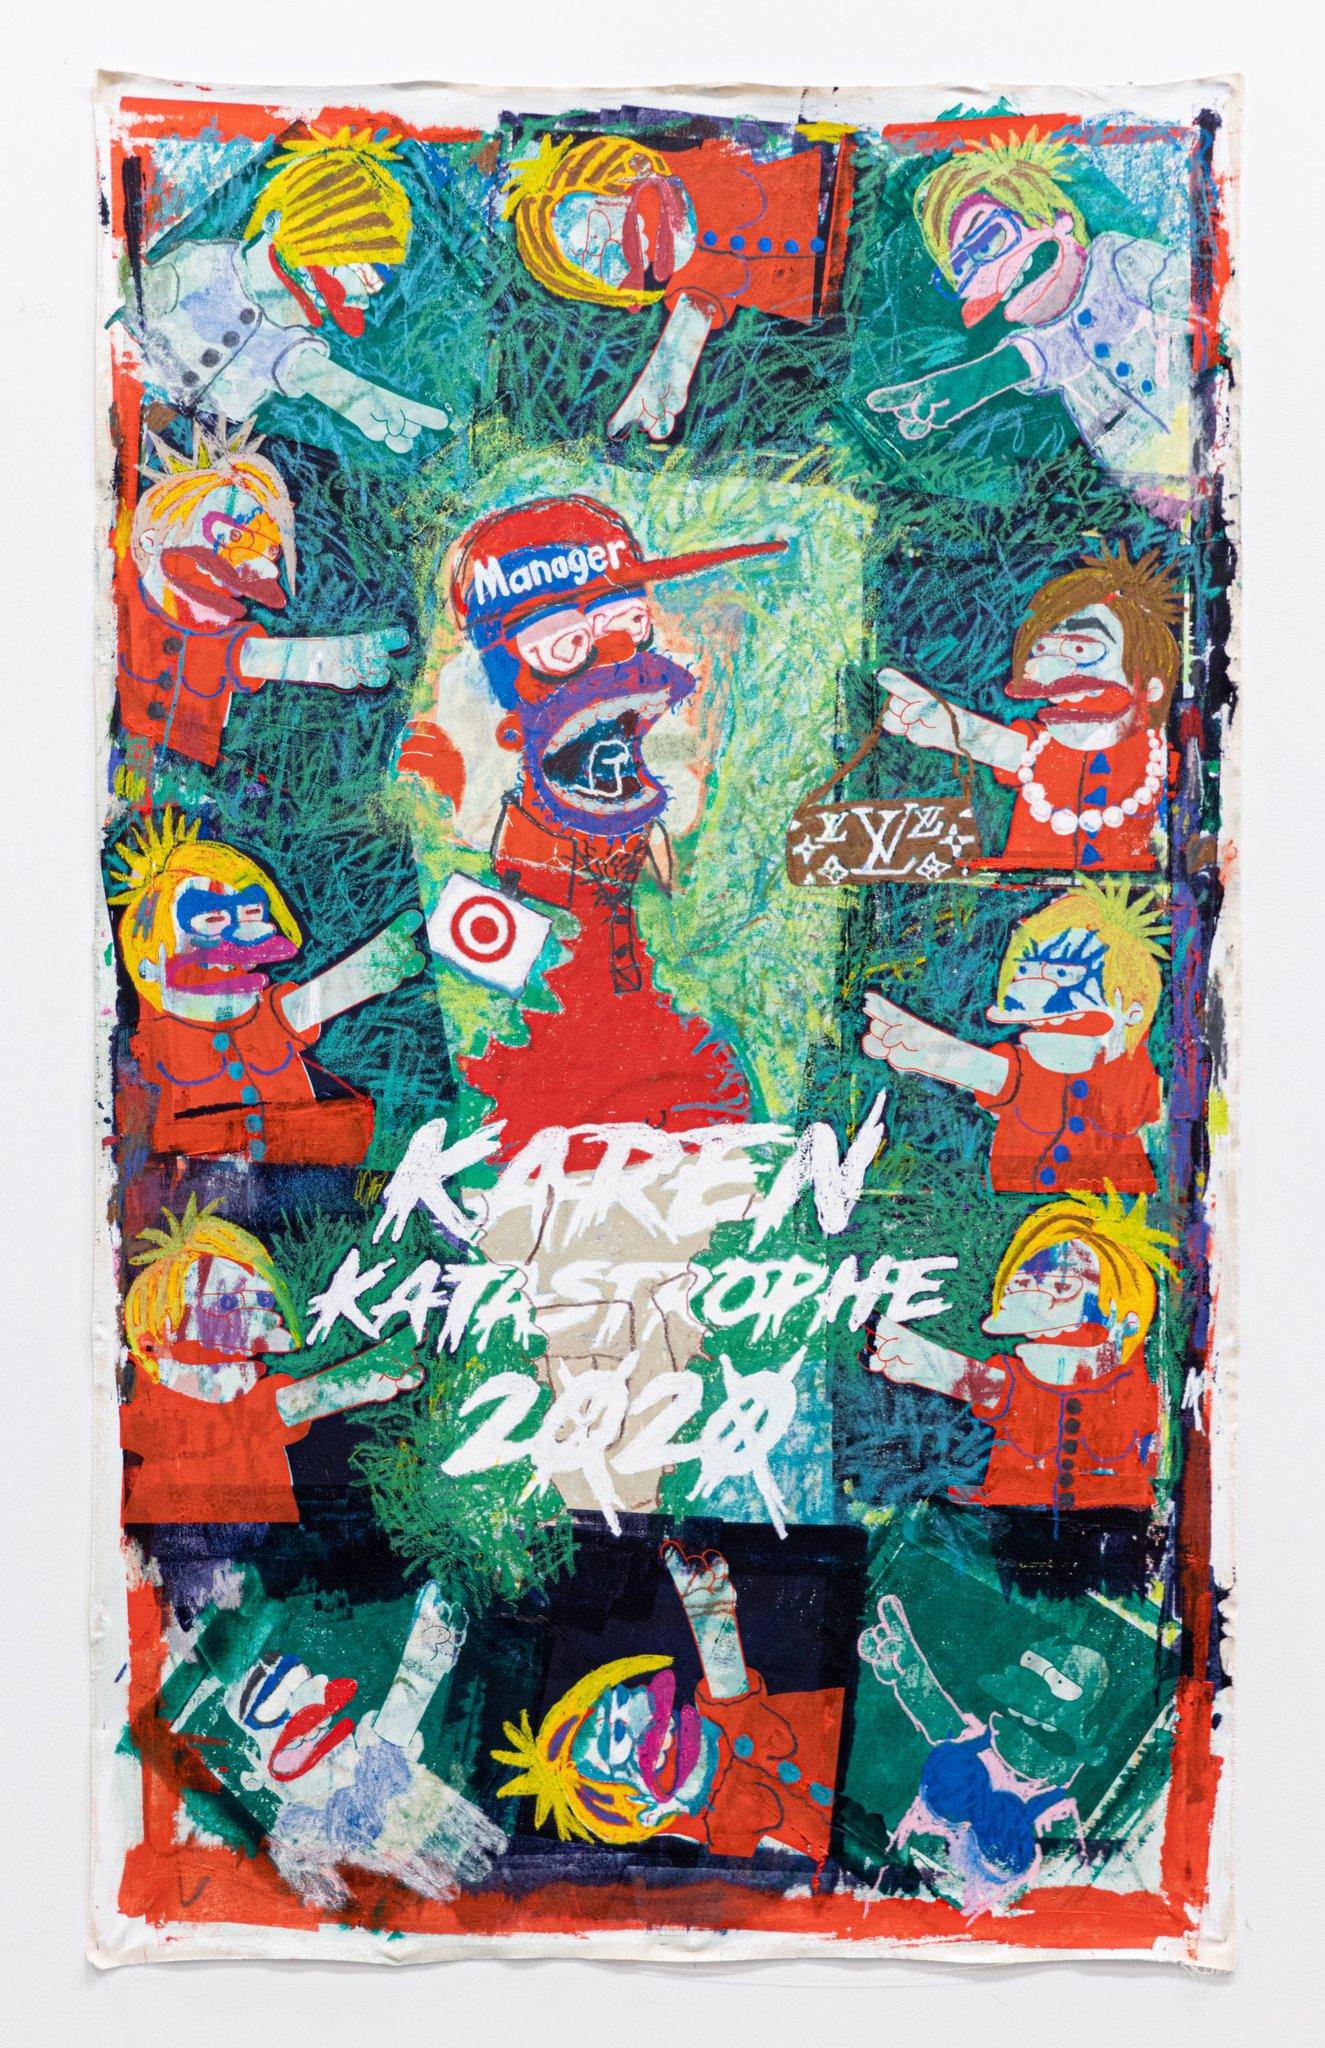 „Karen Katastrophe 2020“, von XVALA, Gemälde in Mischtechnik